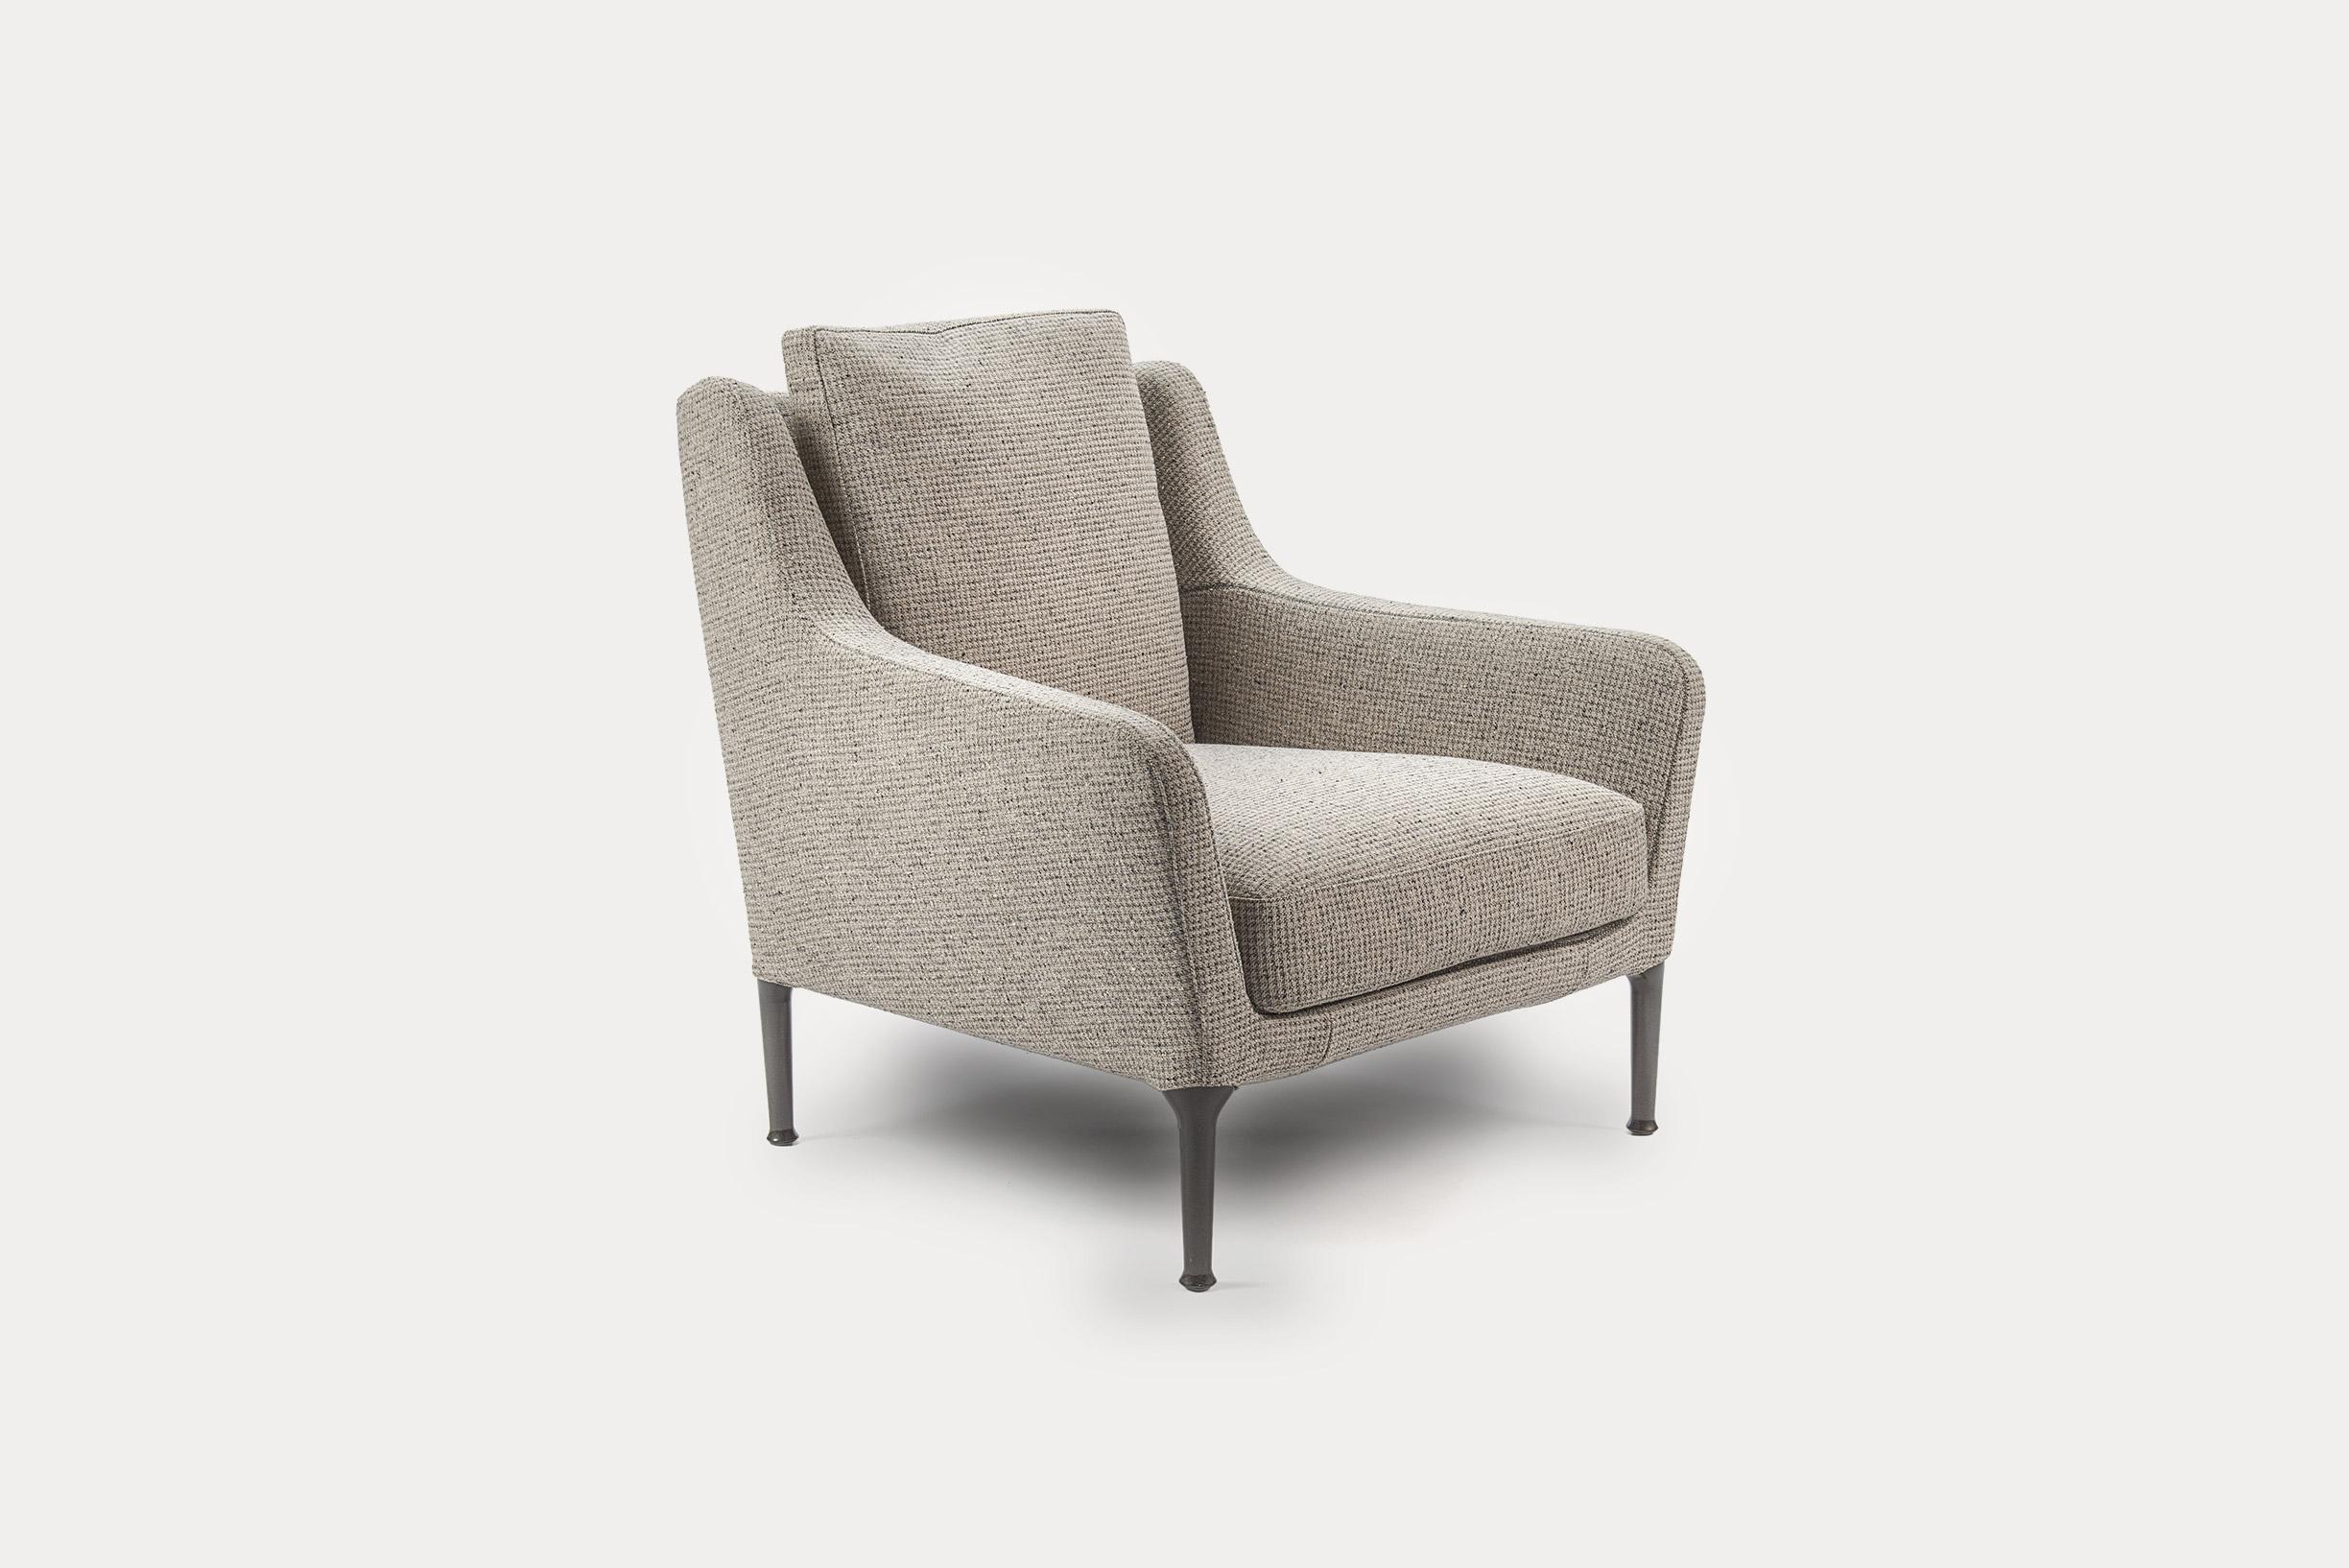 Édouard ist ein Stuhl mit starkem ästhetischem und funktionellem Charme. Sie wurde entwickelt:: um erholsames Sitzen zu ermöglichen. Dieser Sessel ist mit einem strukturierten Stoff von B&B bezogen. Die hohe Rückenlehne und die breite Sitzfläche